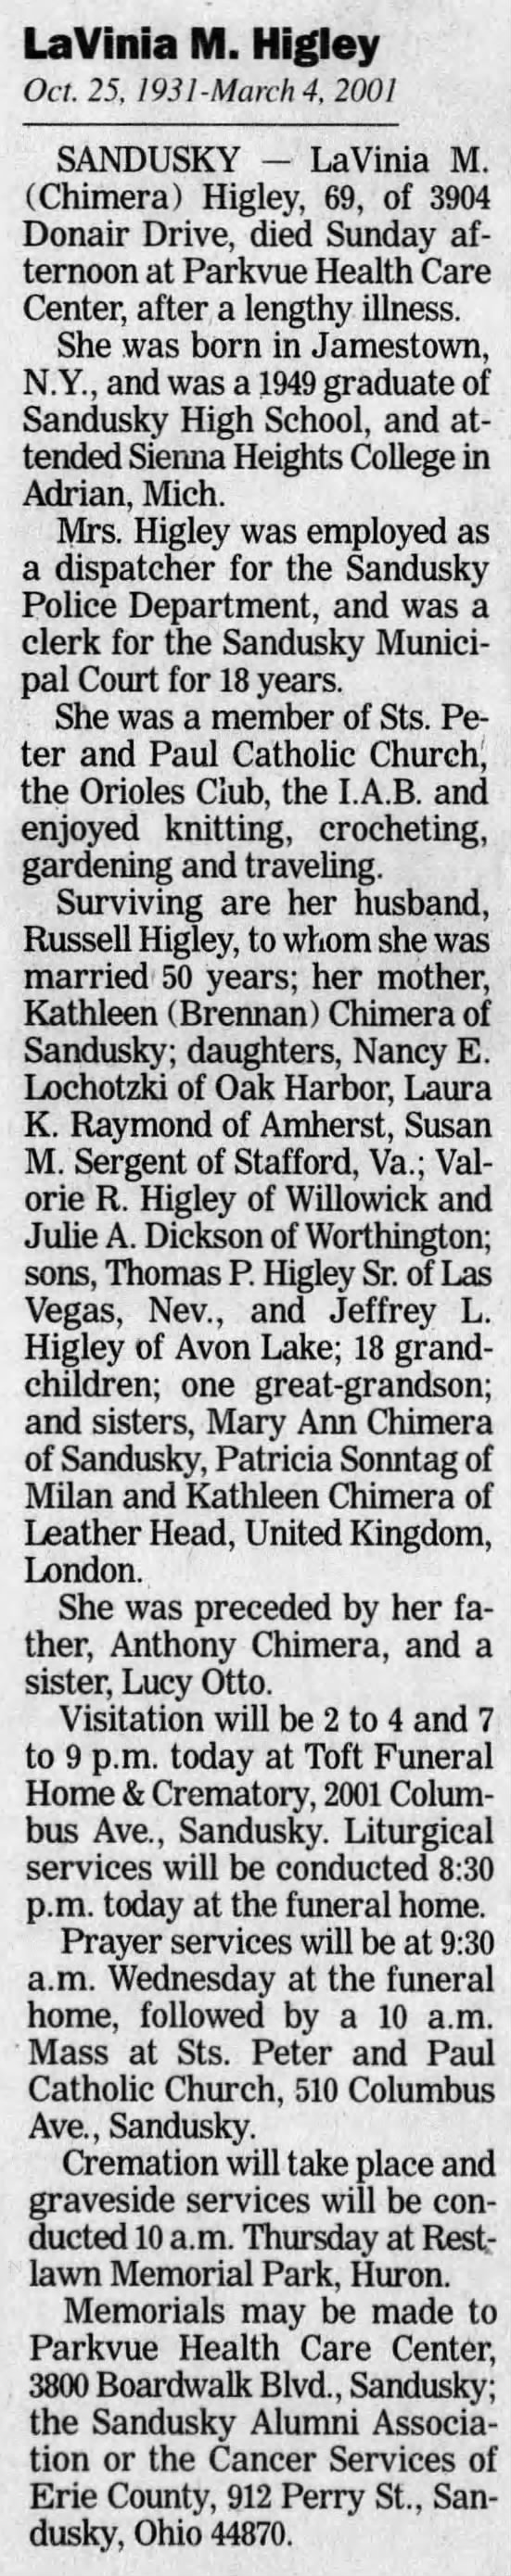 LaVinia Marie Chimera Higley, obituary, 6 Mar 2001, News Herald, Port Clinton, OH